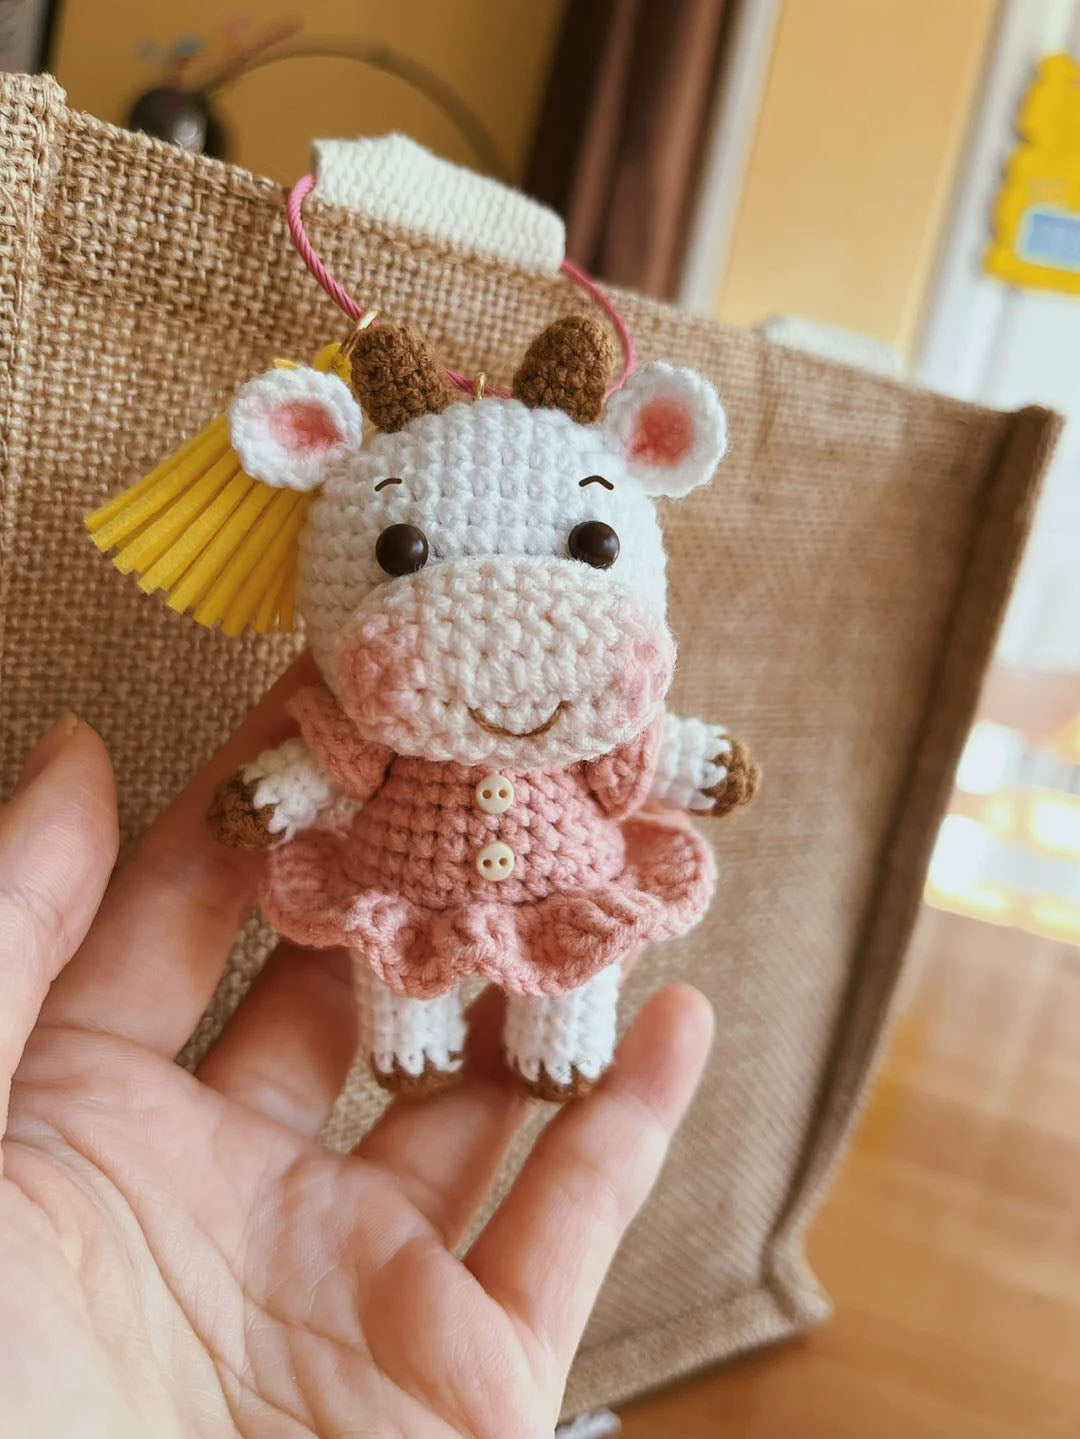 Dressed Cow Crochet Pattern